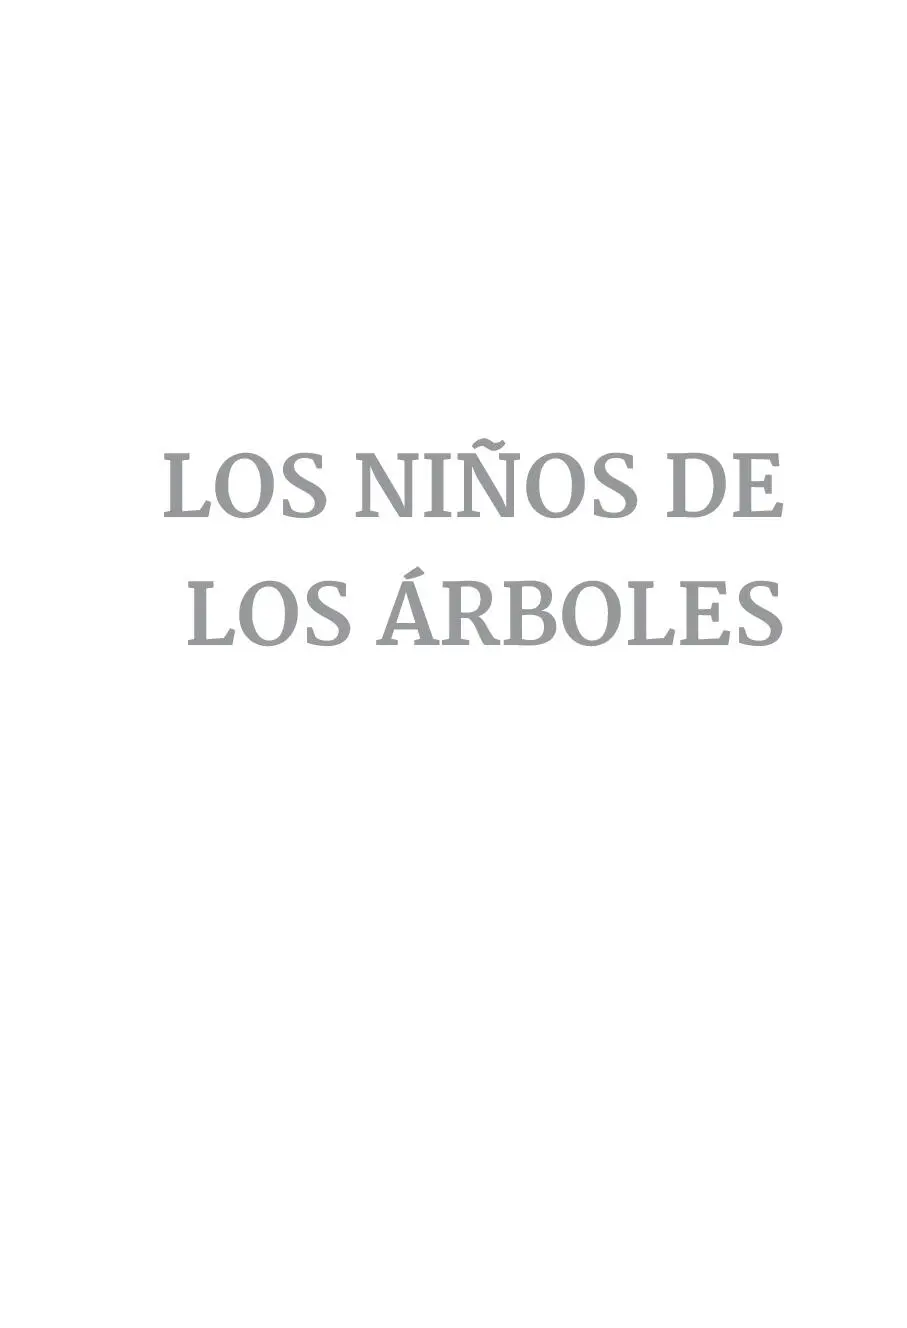 del texto Enrique Obrero diseño de cubierta Equipo Mirahadas corrección - фото 1